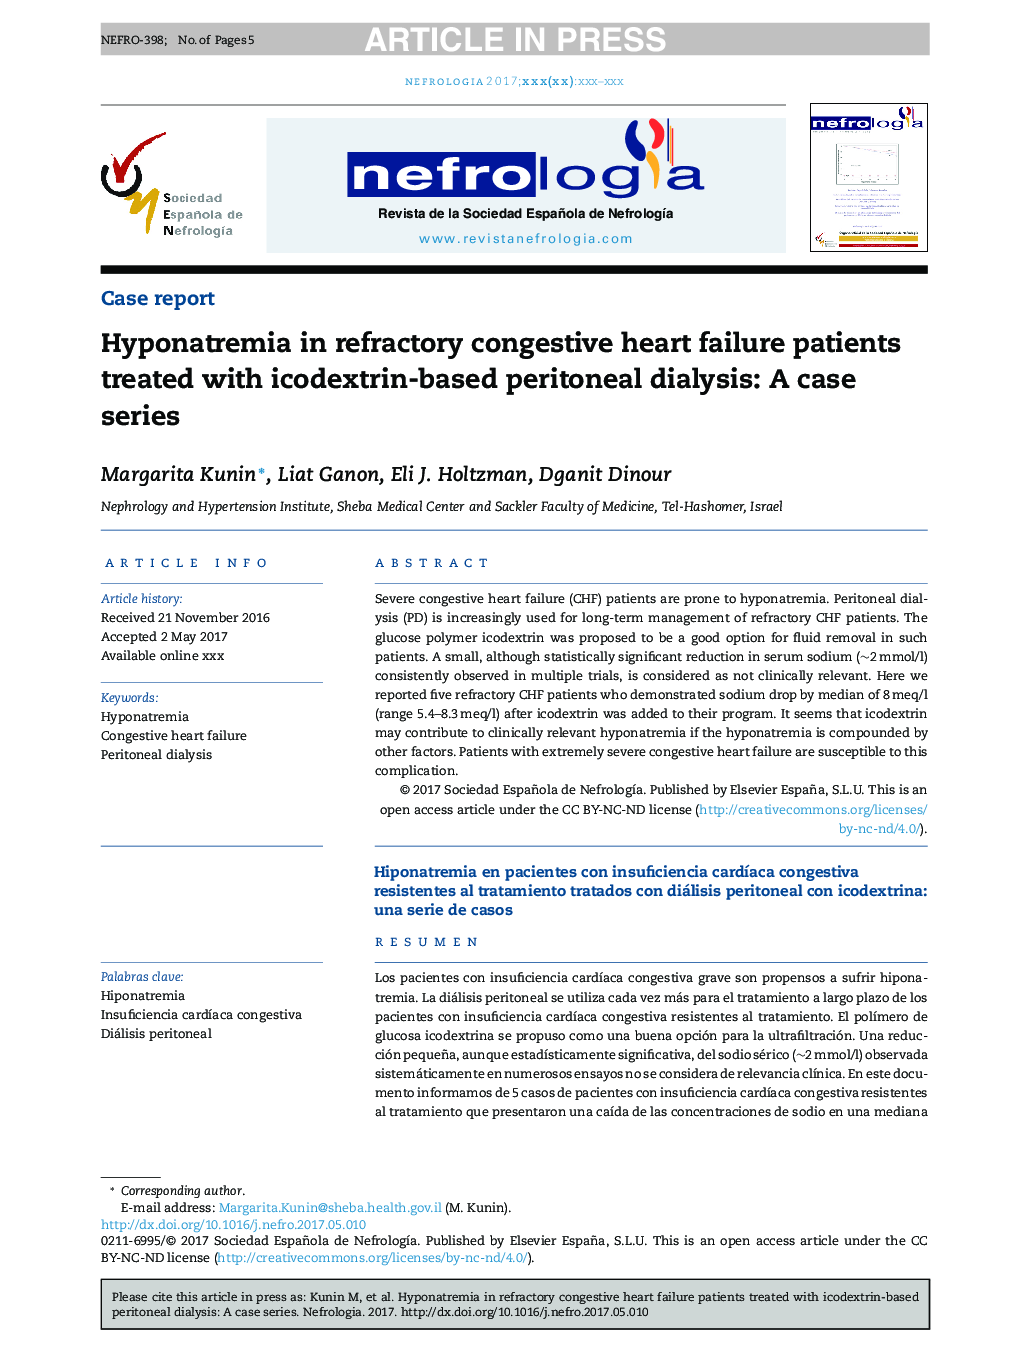 هیپوناترمی در بیماران مبتلا به نارسایی احتقانی قلب که با دیالیز صفاقی مبتنی بر ایکودکسترین درمان شده اند: یک سری موارد 